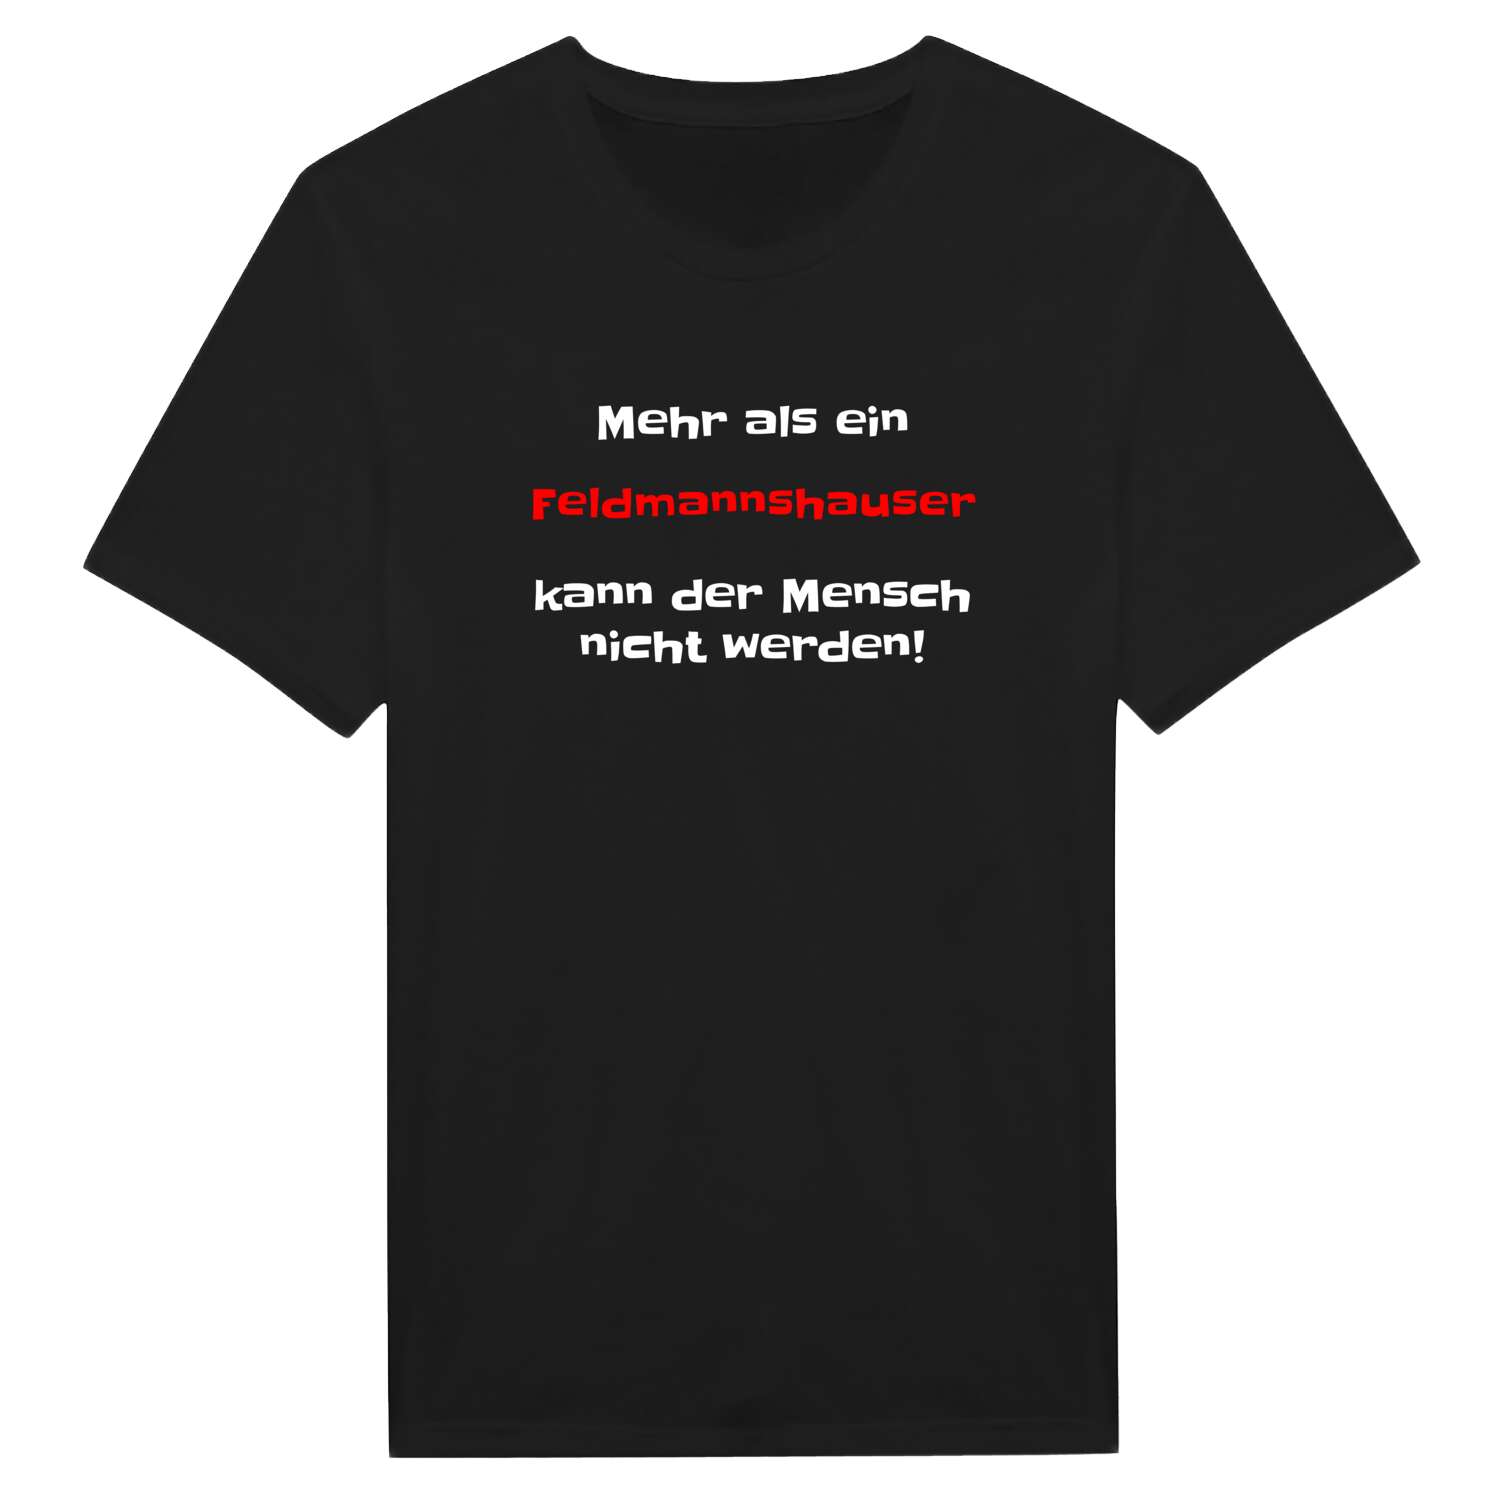 Feldmannshaus T-Shirt »Mehr als ein«